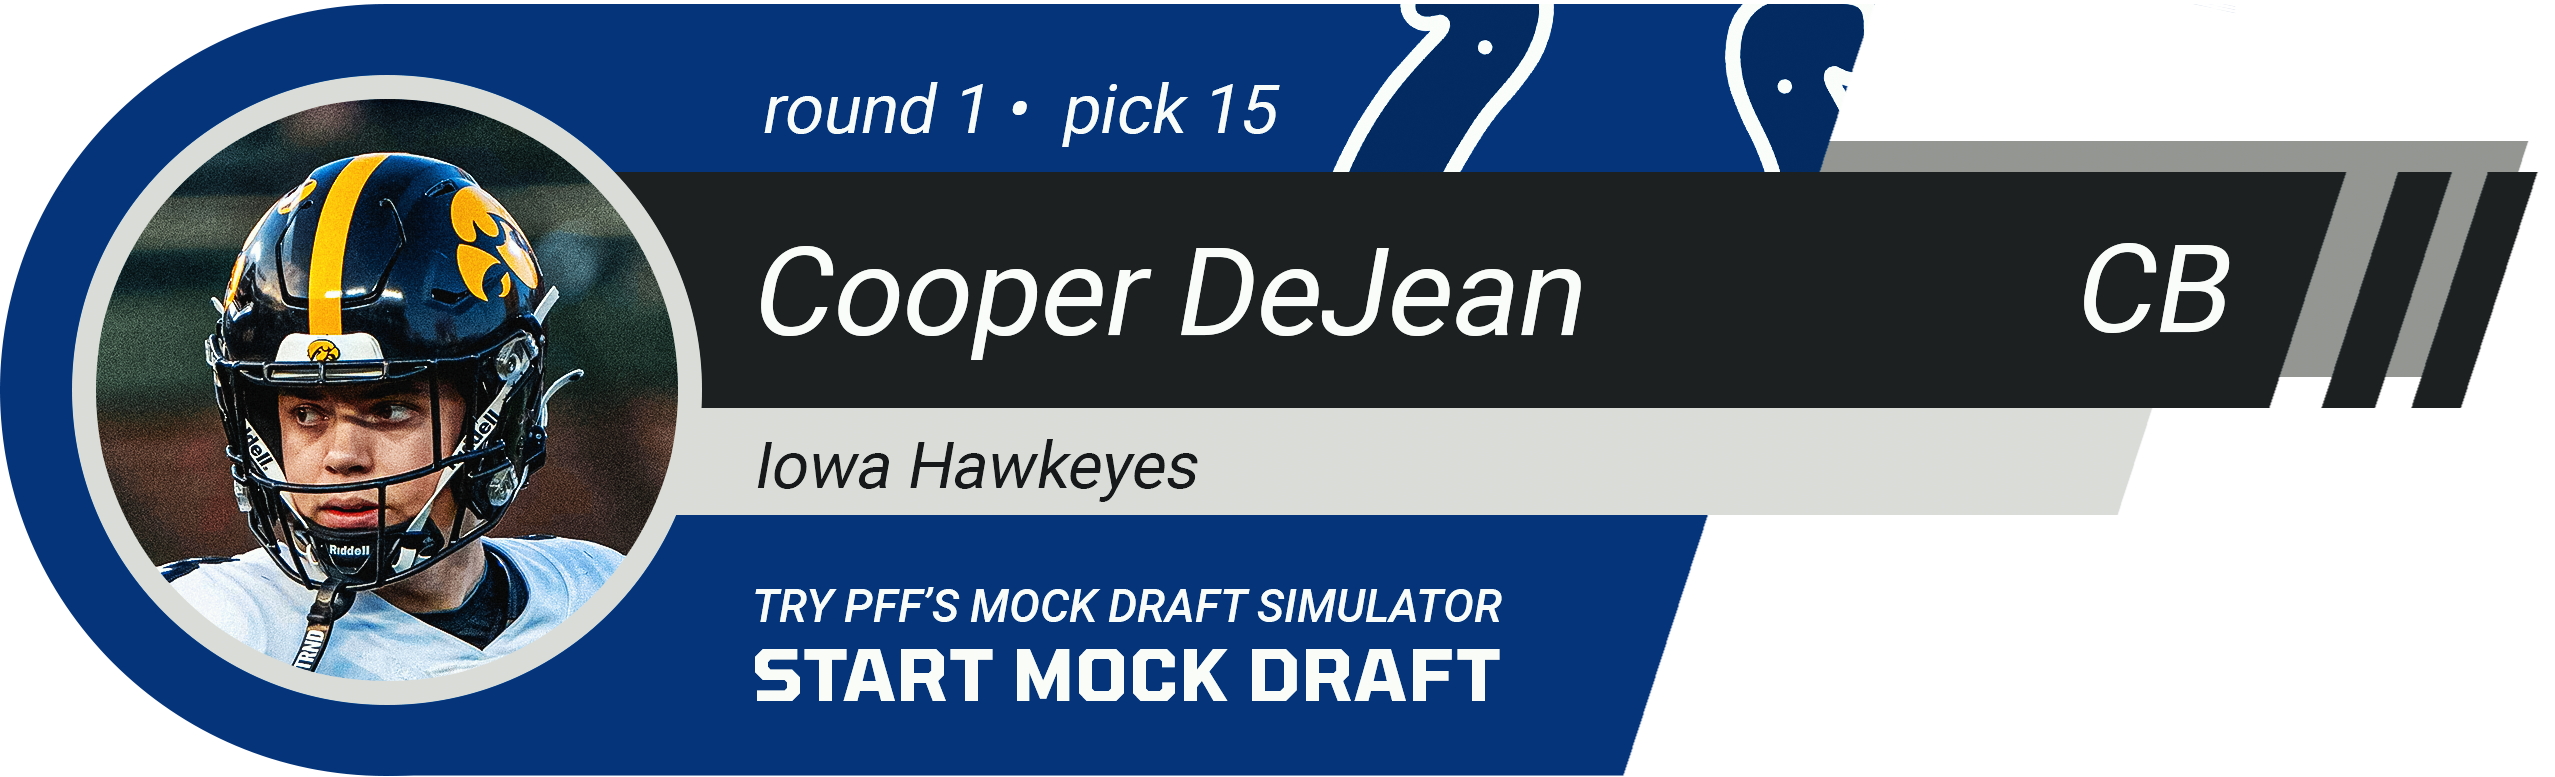 15. Indianapolis Colts: CB Cooper DeJean, Iowa